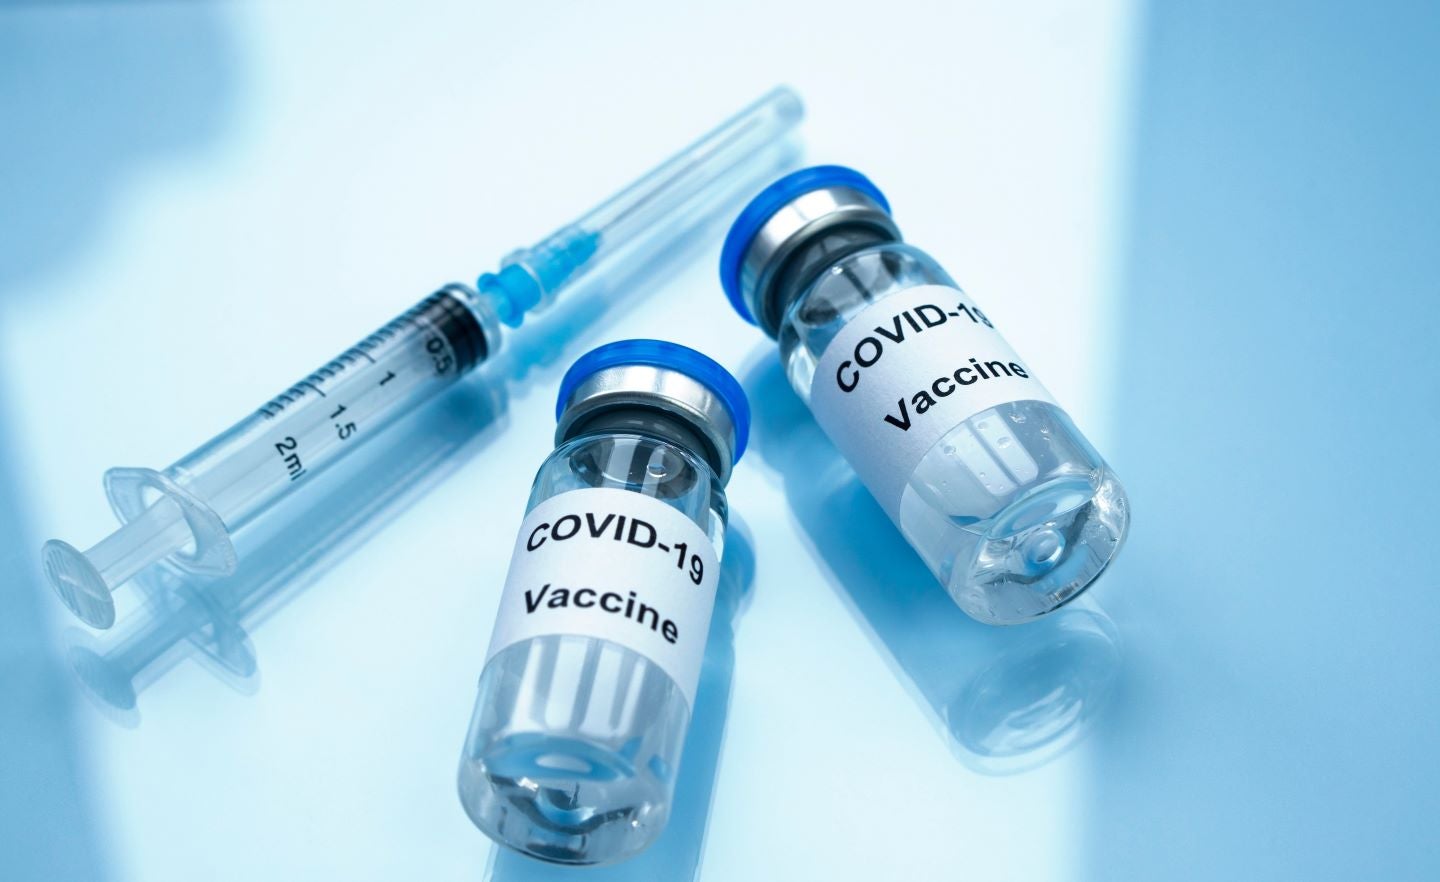 日本はCSLとアークトゥルスが製造した新型コロナウイルスワクチンの承認を与える